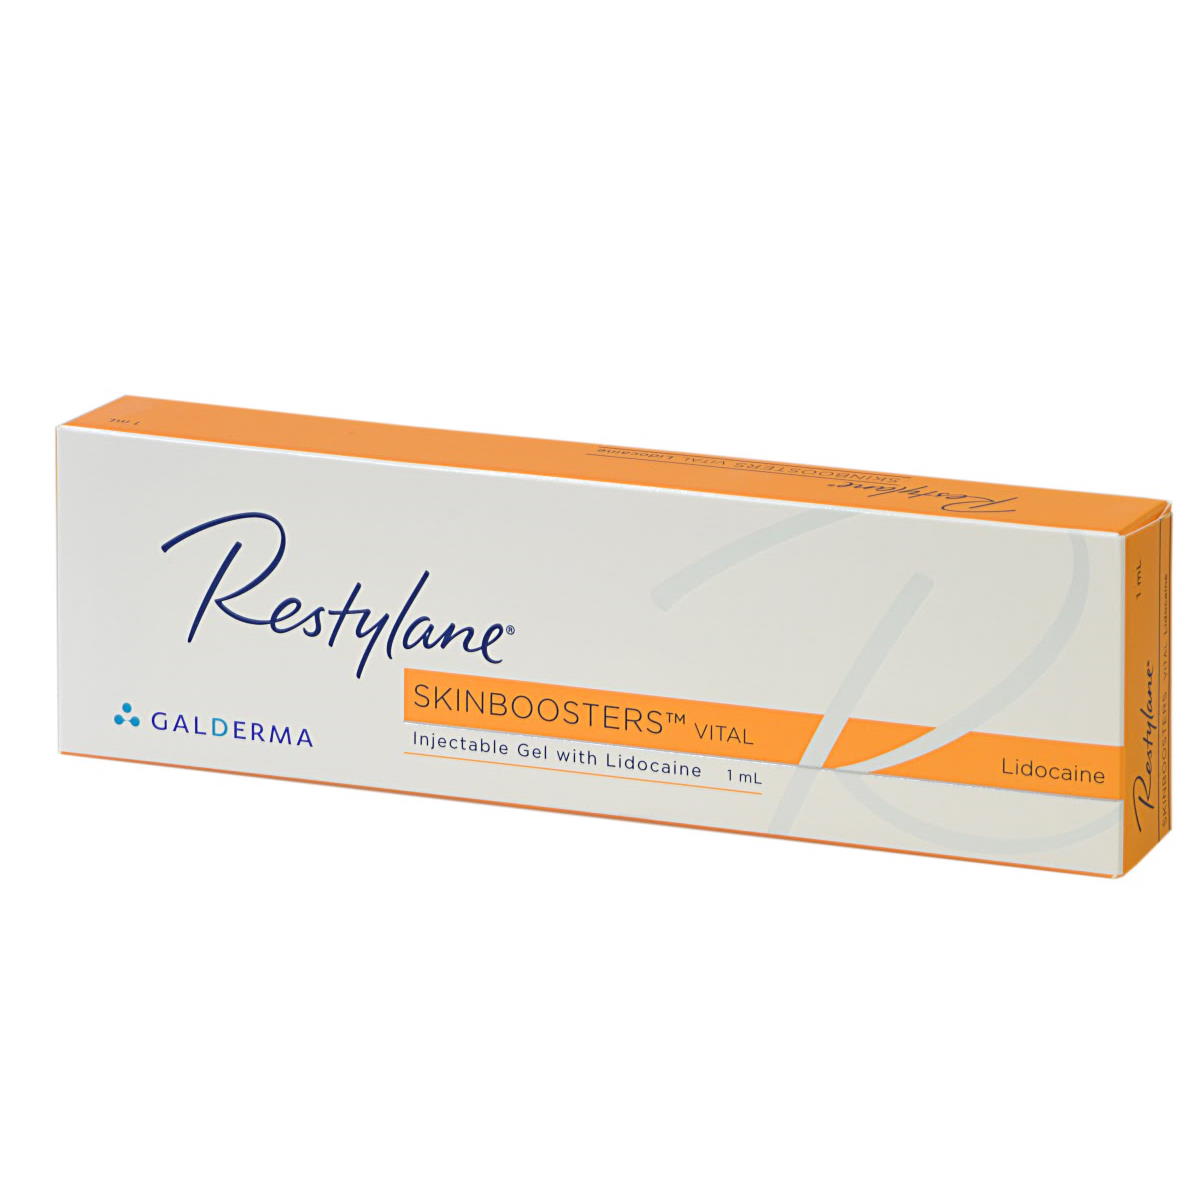 Restylane Skinboosters Vital Lidocaine
Contiene 1 siringa da 1ml
Indicato per riempire le rughe del viso, restituendo volume ed idratazione alla pelle, in maniera naturale.